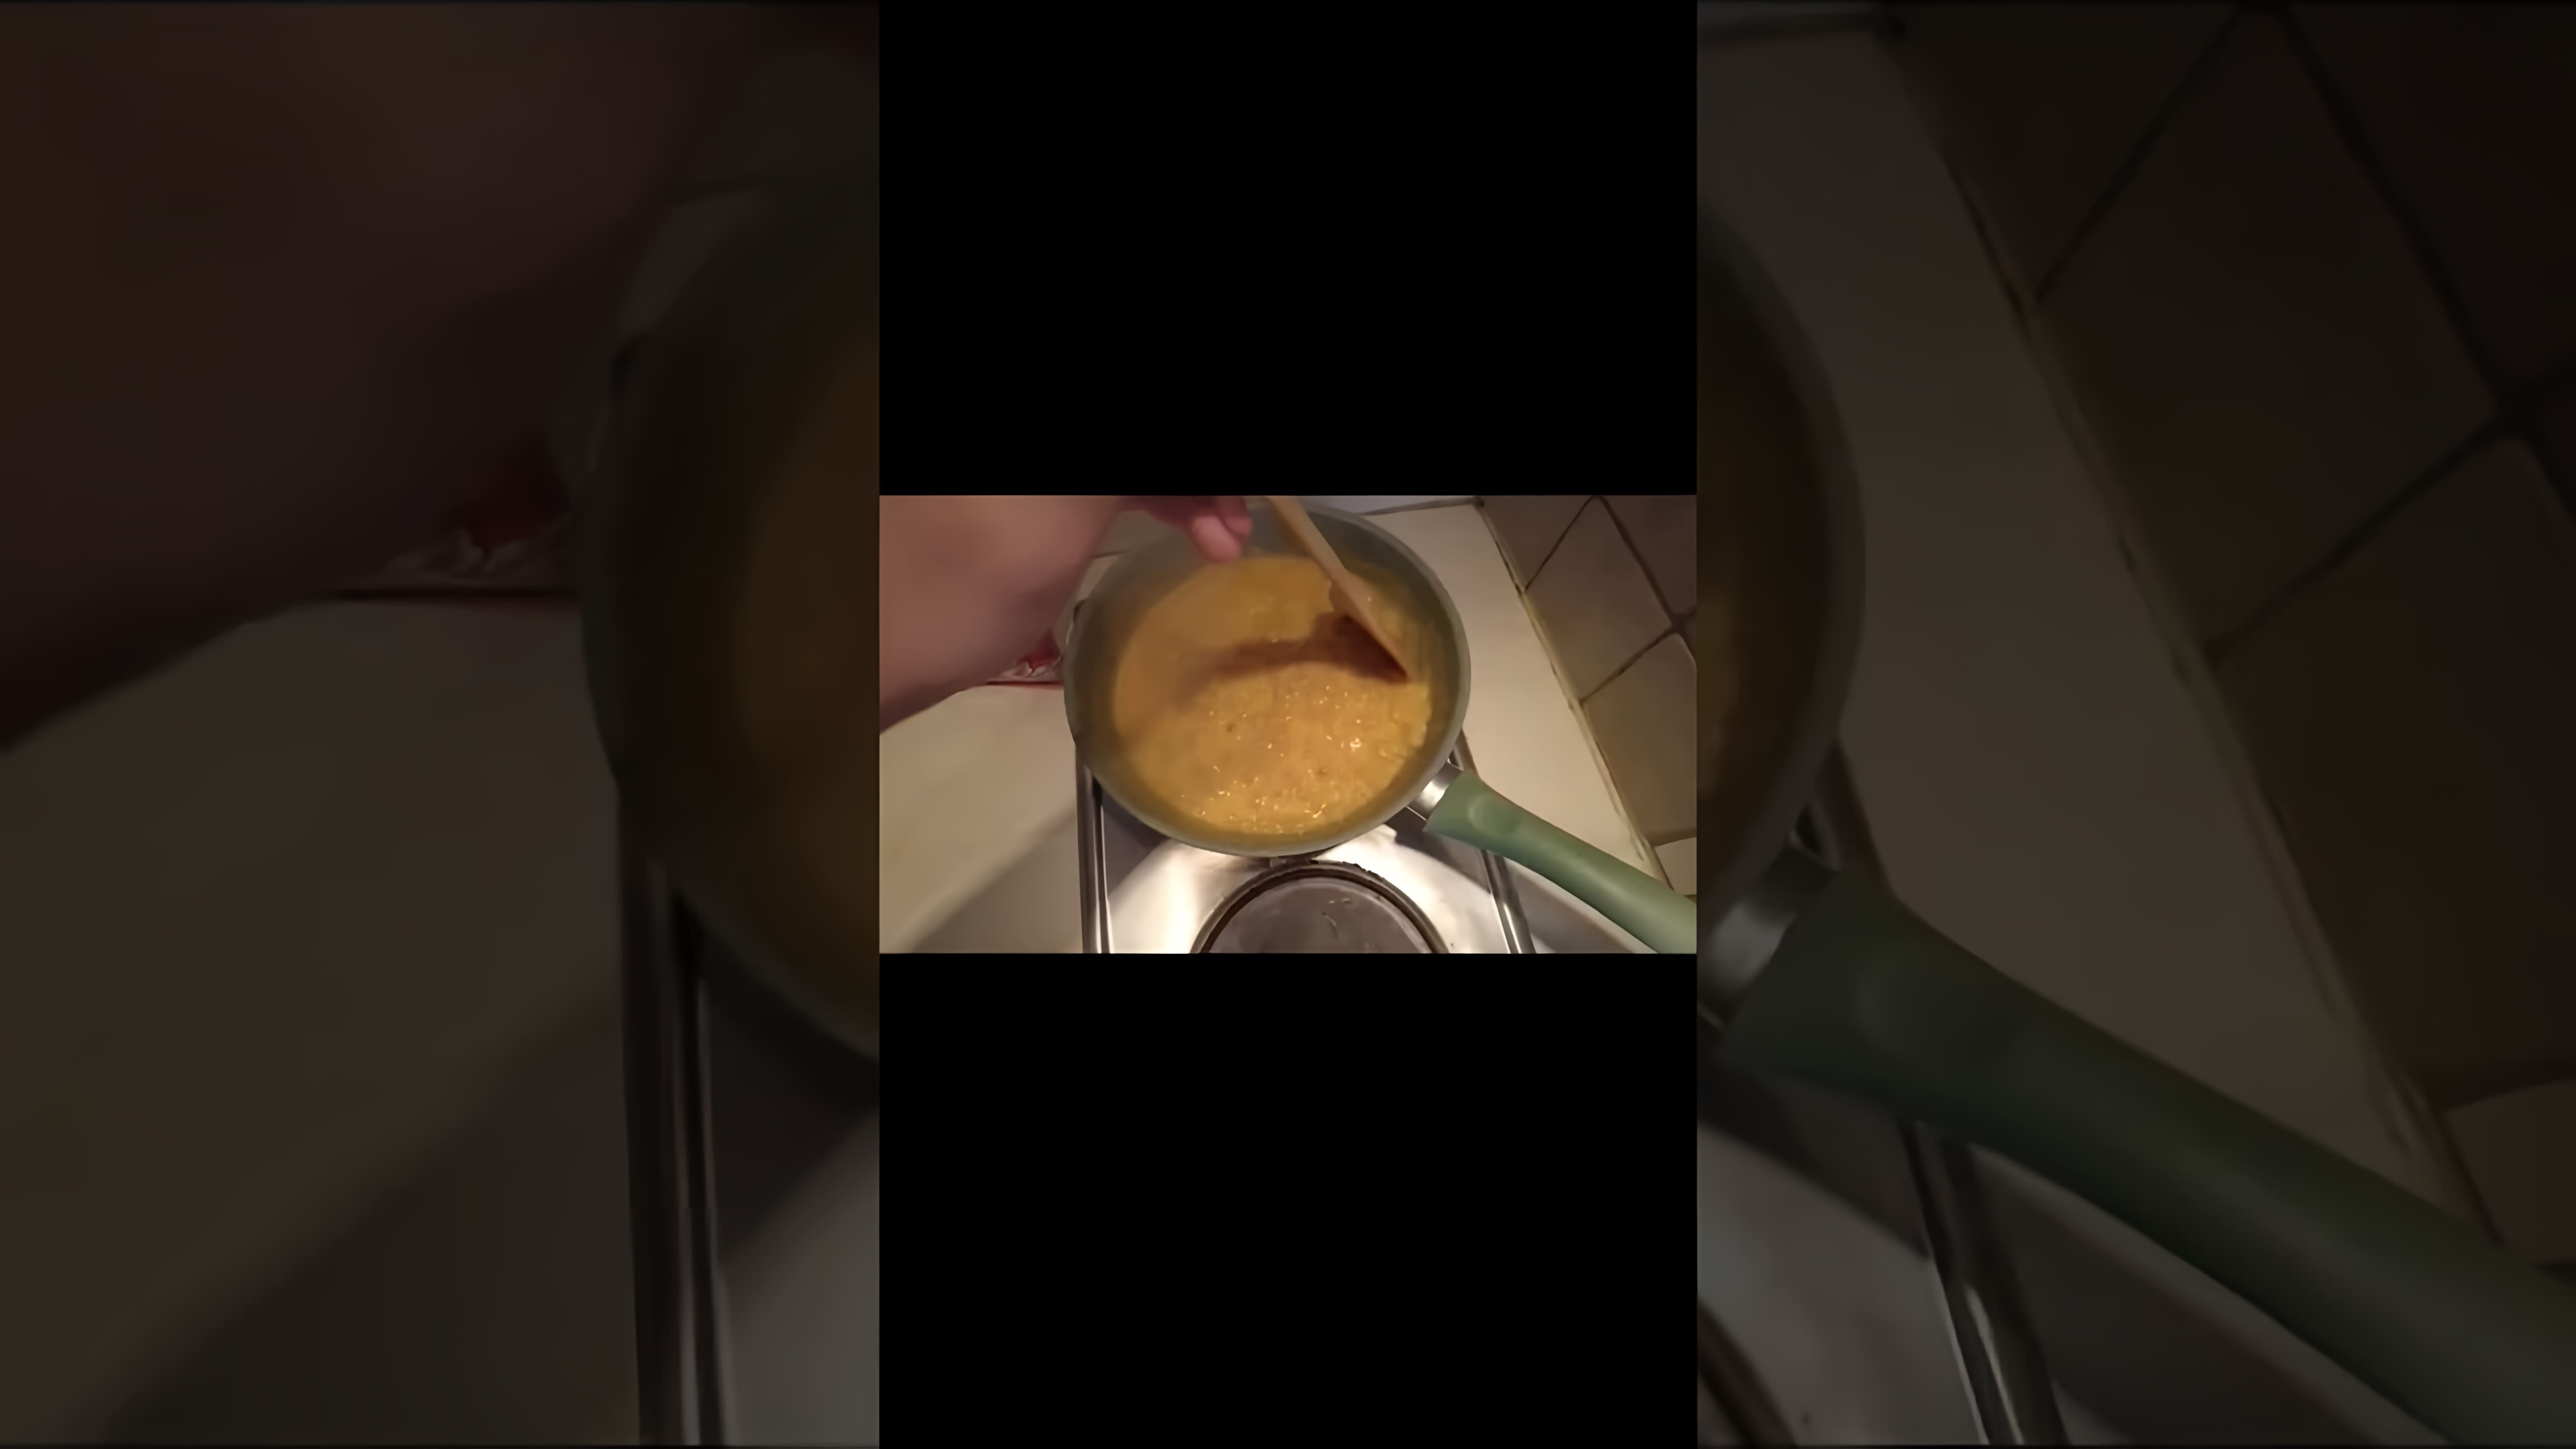 МАКАРОНЫ с ЧИТОС 🤢 - это видео-ролик, который показывает, как приготовить вкусные макароны с читос